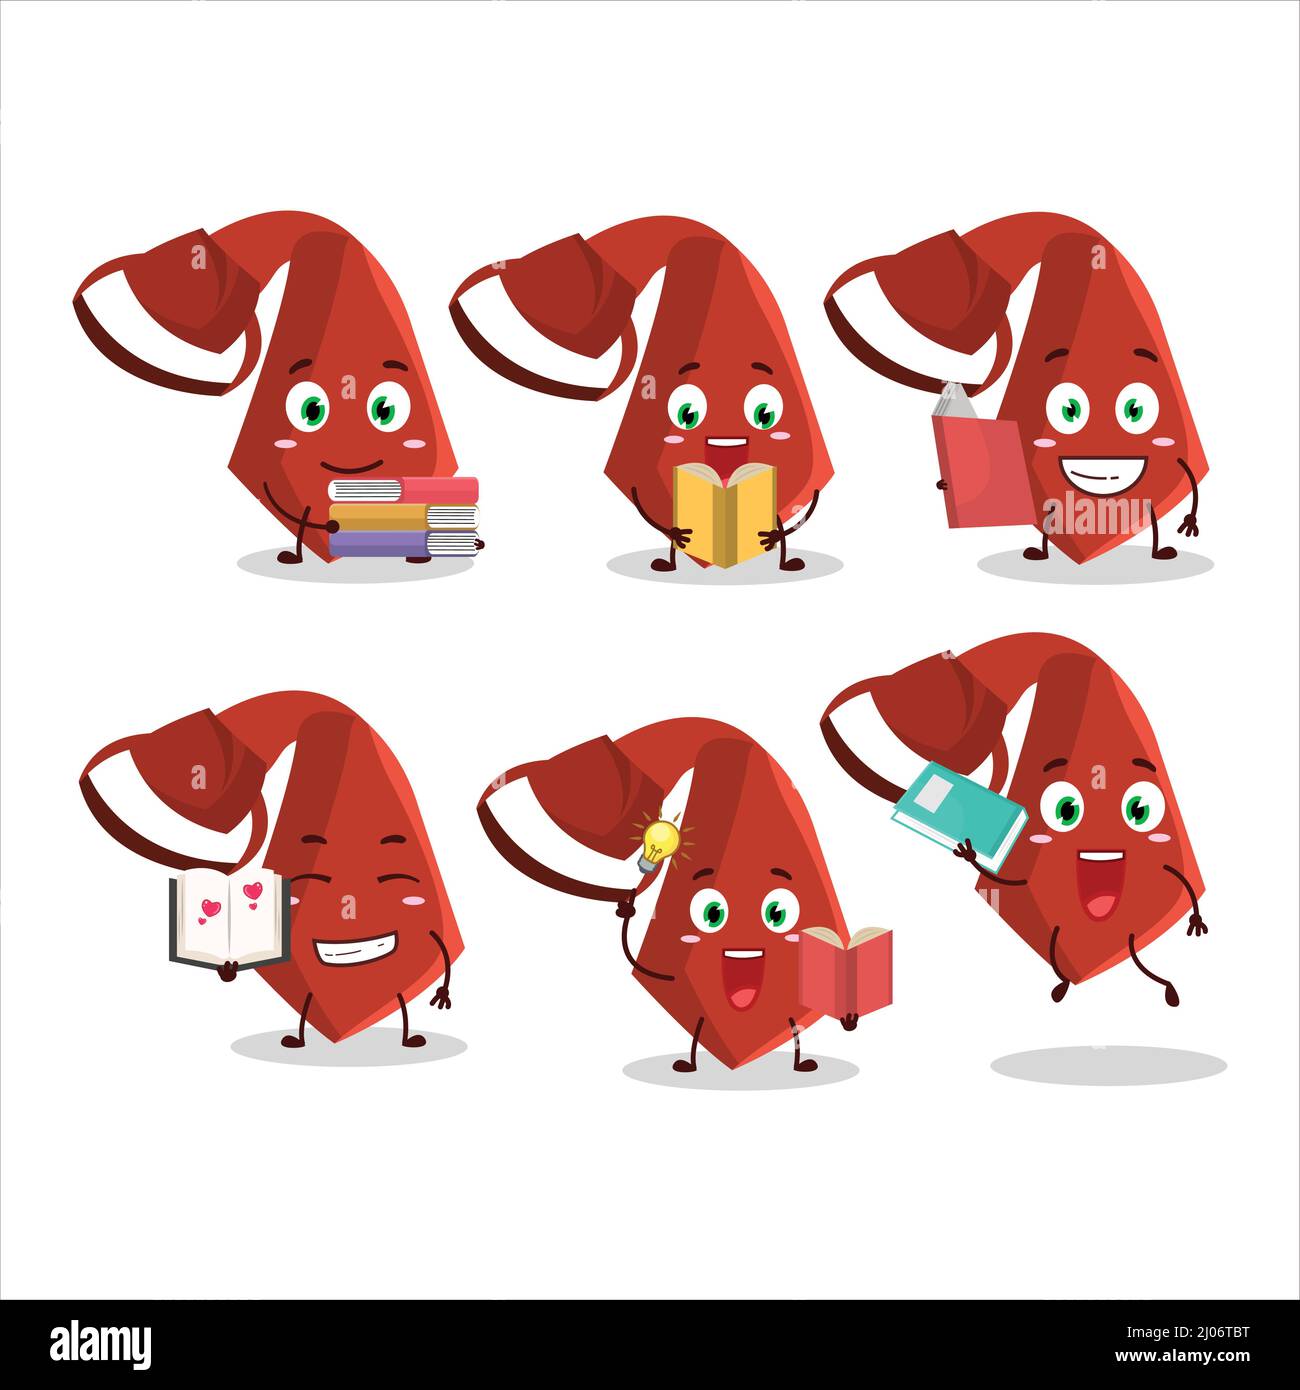 Lazo Rojo - una ilustración de dibujos animados de un lazo Rojo